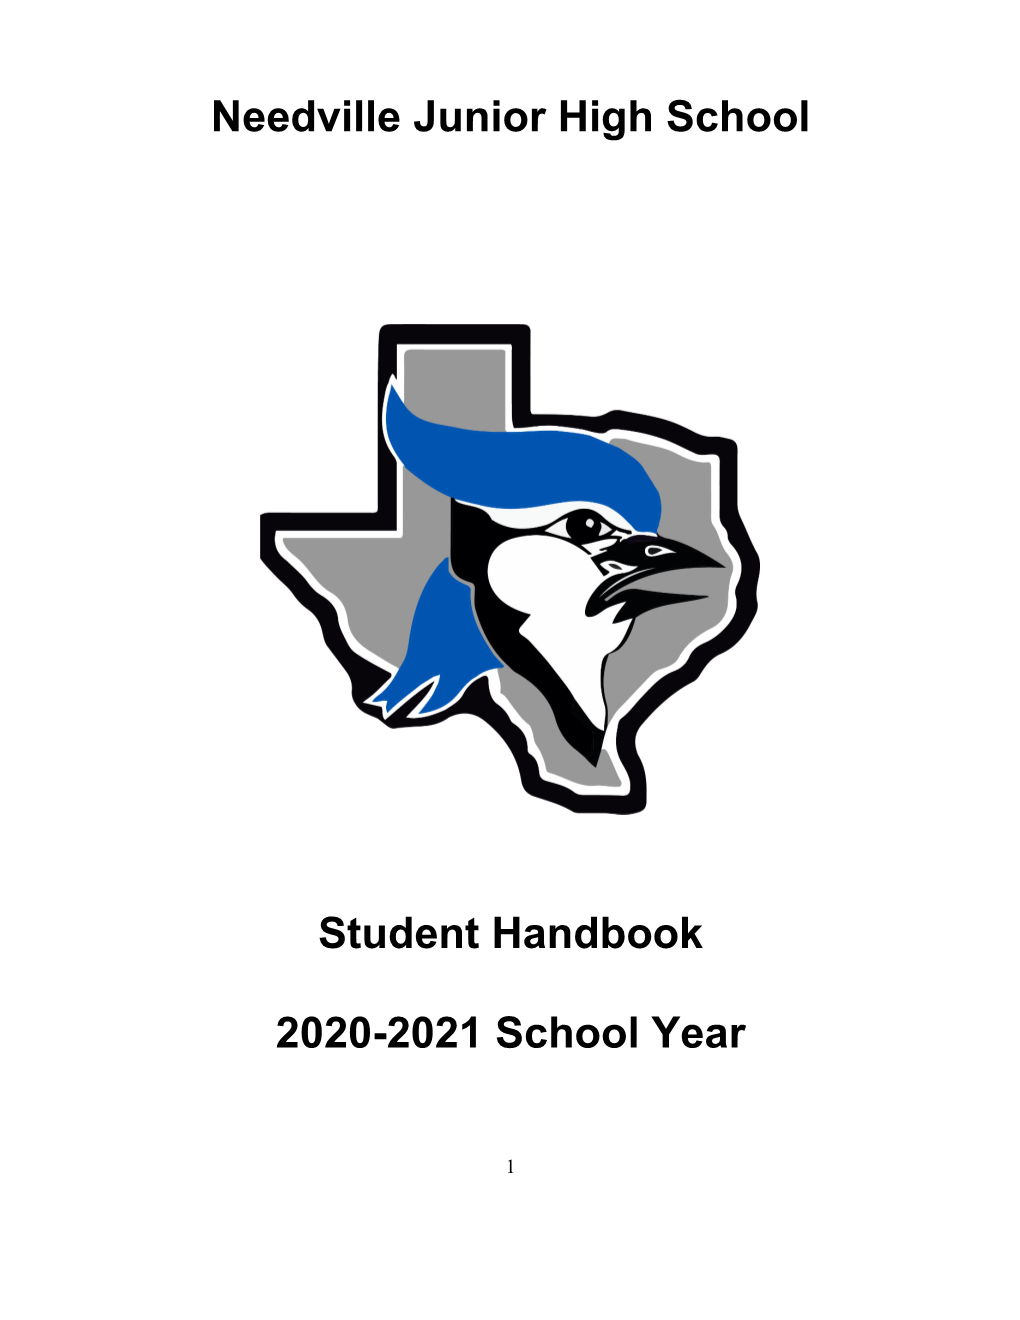 Needville Junior High School Student Handbook 2020-2021 School Year